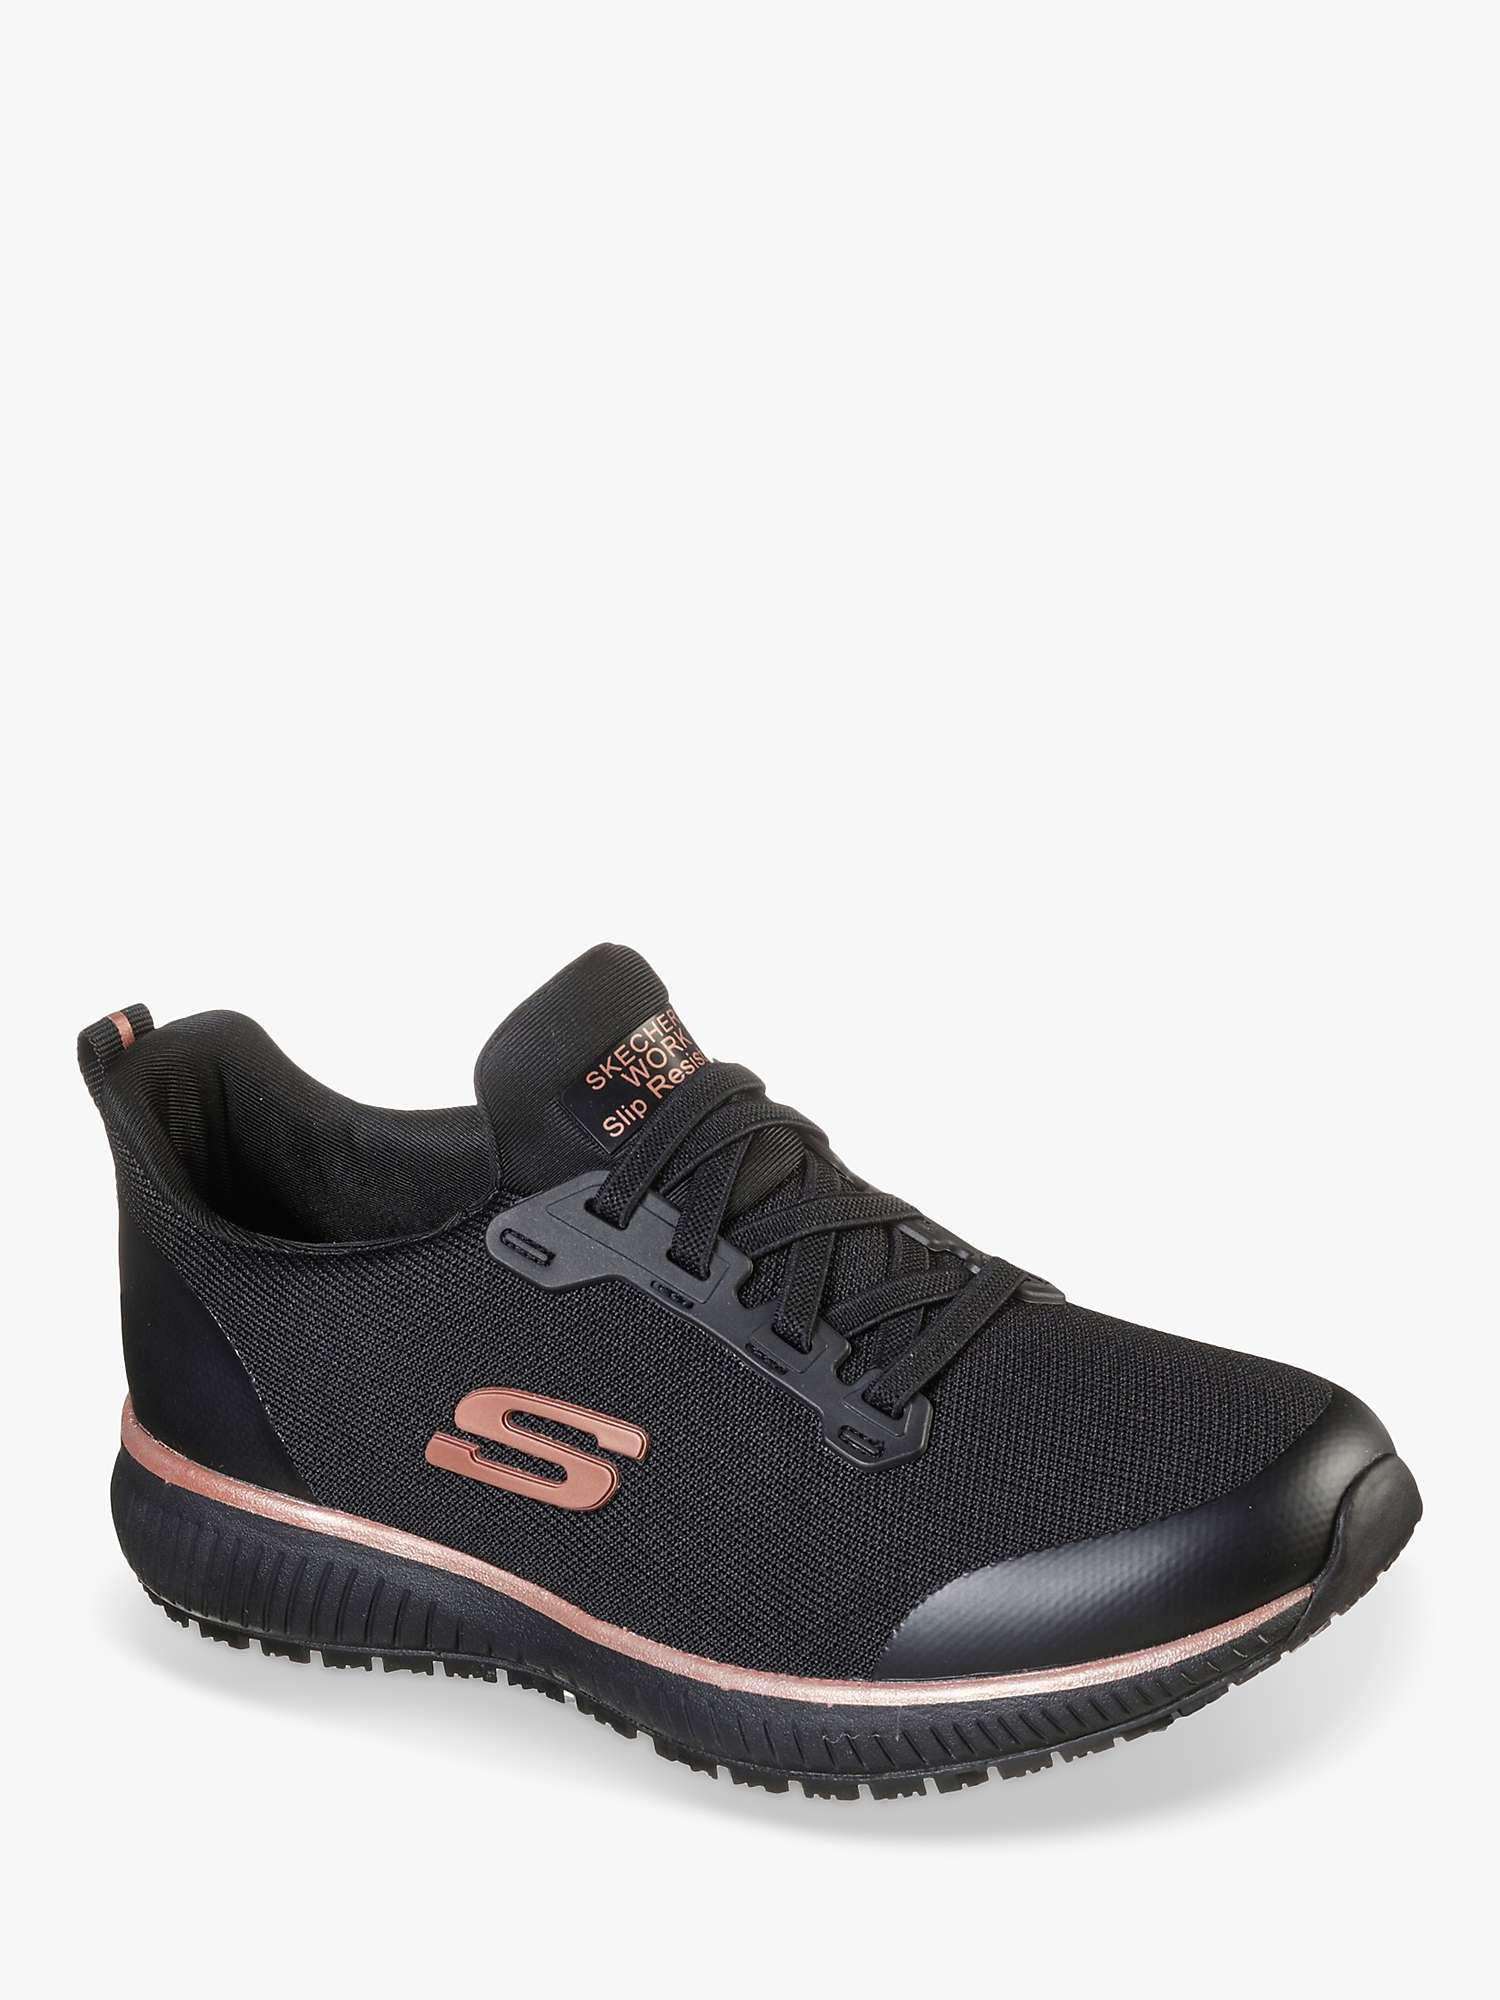 Buy Skechers Squad SR Occupational Shoes, Black Online at johnlewis.com